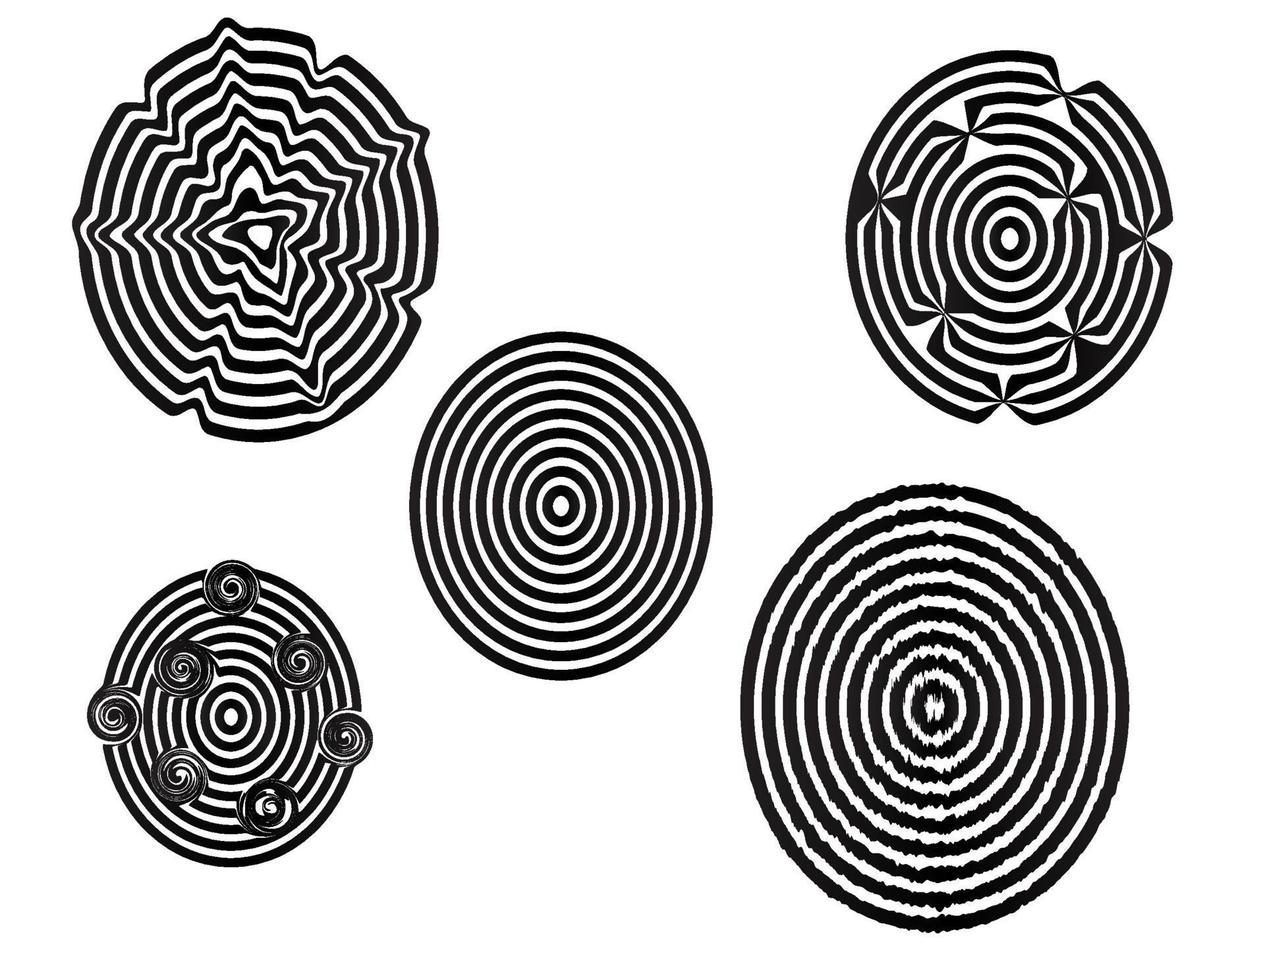 cinq cercles abstraits de bandes noires. vecteur